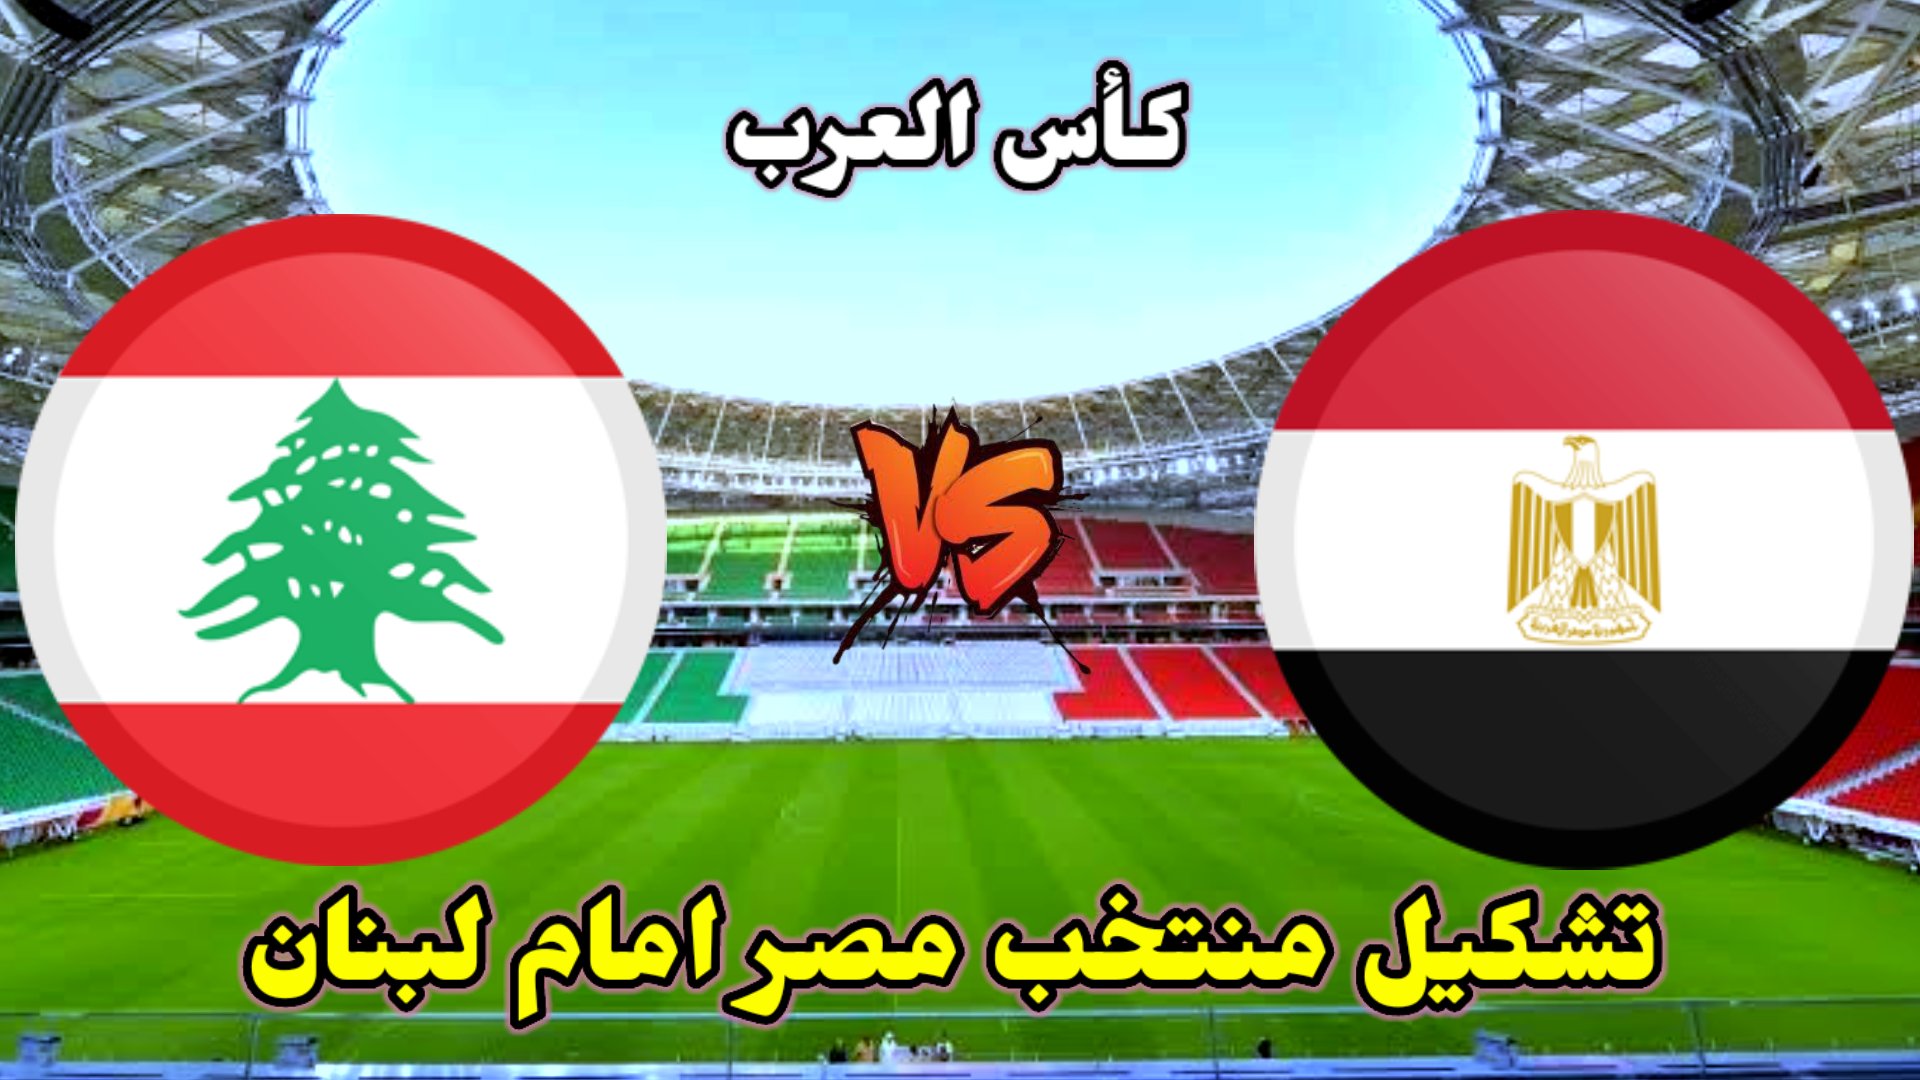 المنتخب المصري يواجه لبنان في كأس العرب لكرة القدم بالدوحة 2